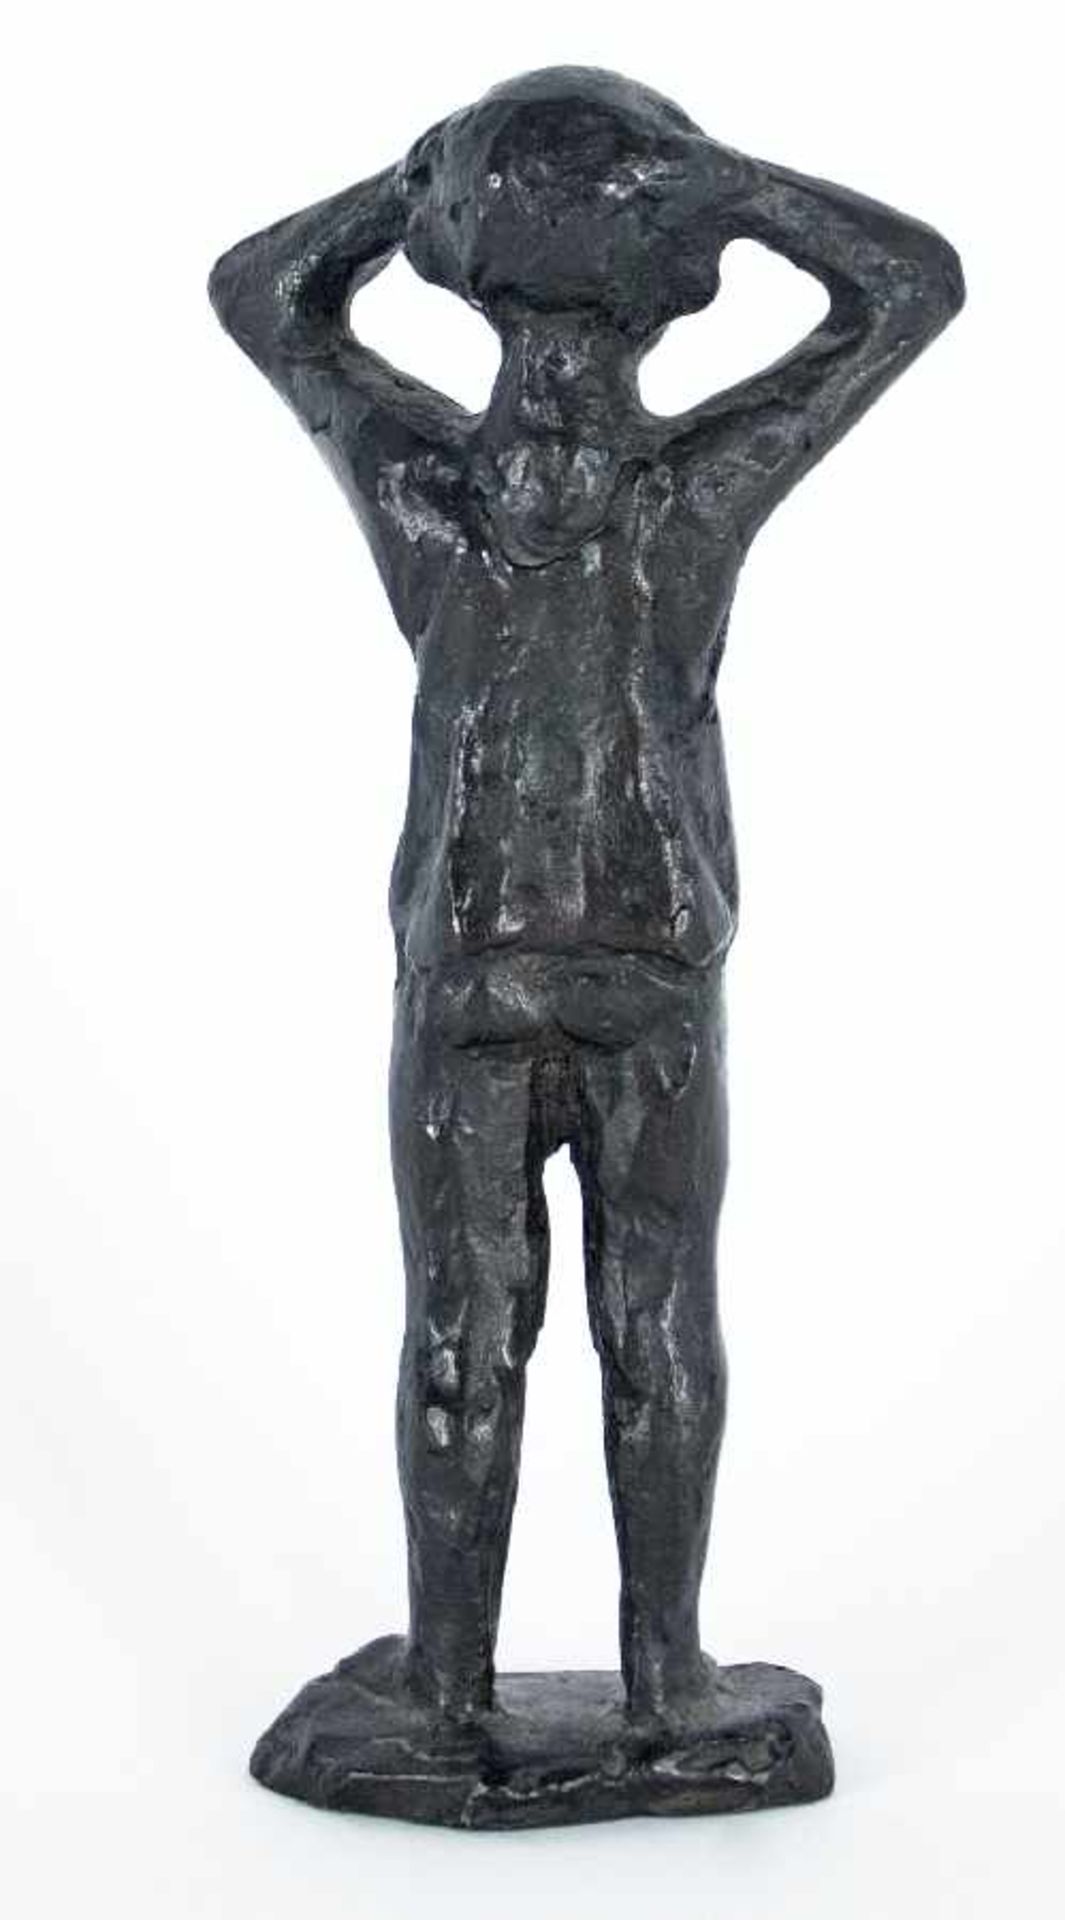 Curt Beckmann 1901 - 1970 Düsseldorfer Bildhauer; Mitglied in Rheinische Sezession, Das Junge - Bild 2 aus 2